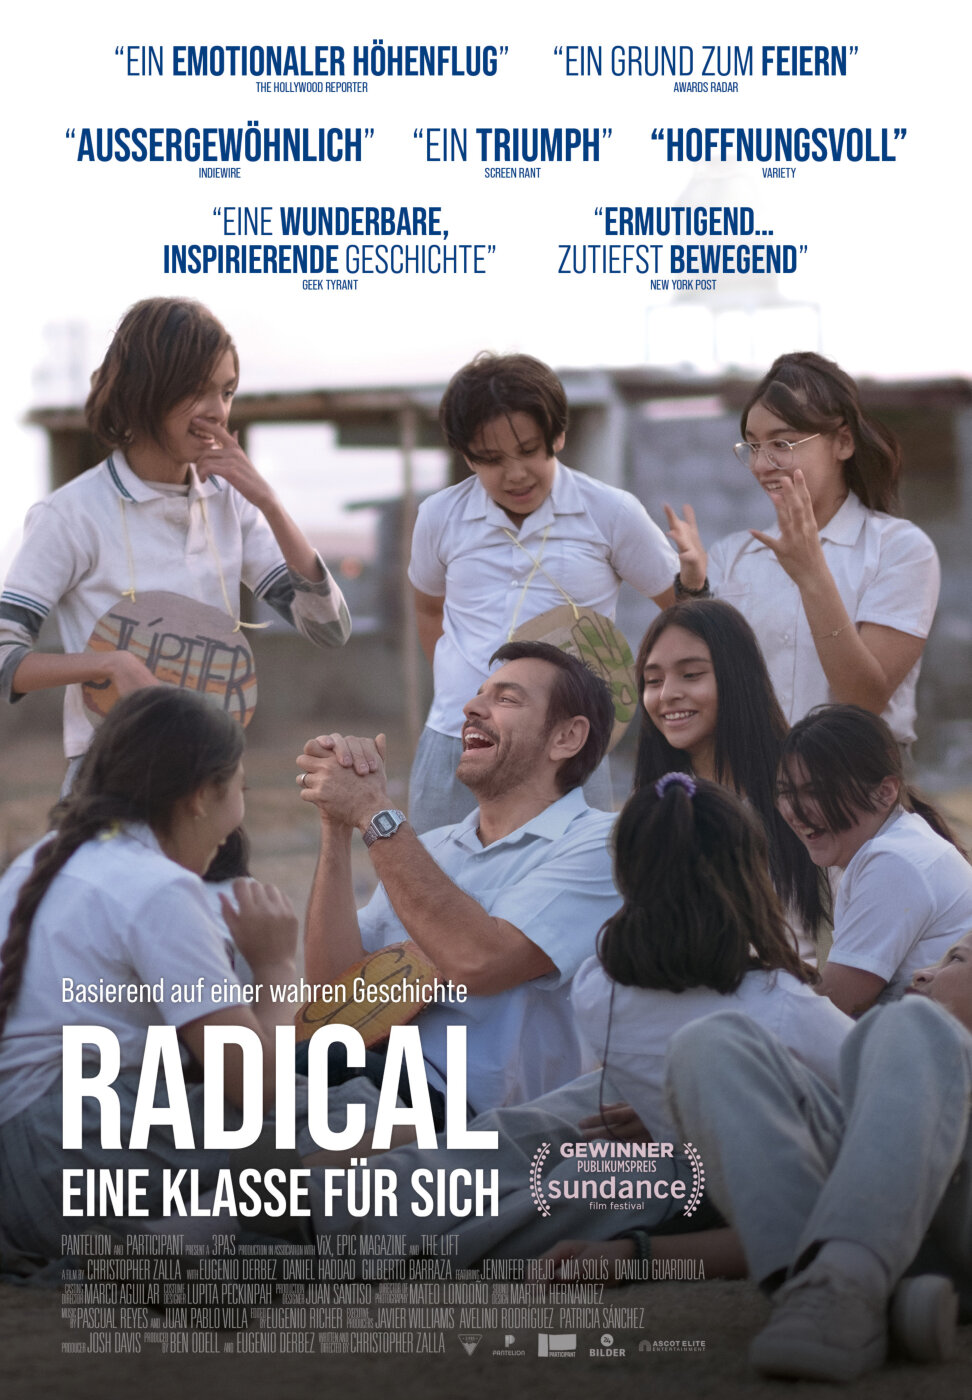 Radical – Eine Klasse für sich